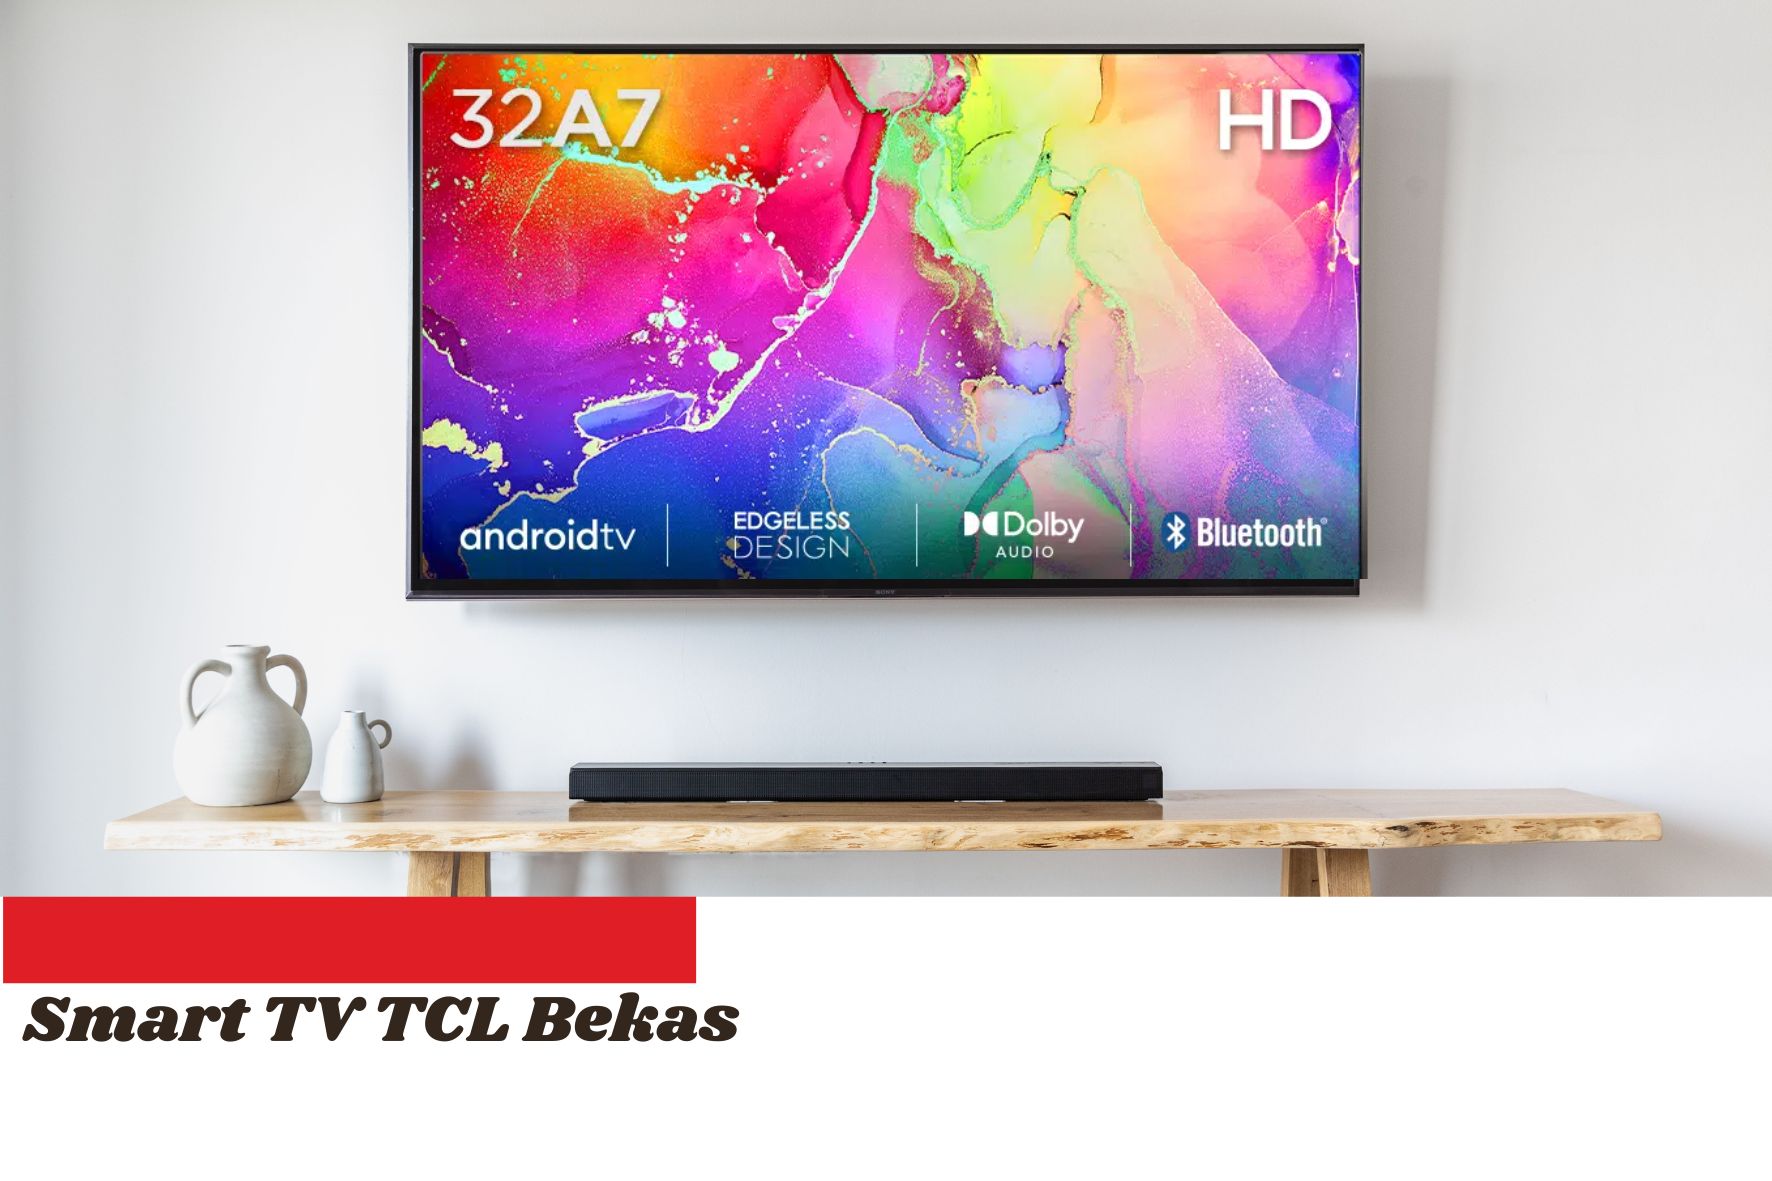 Harga Smart TV TCL 32 Inch Bekas cuma 500 Ribuan di E-commerce, Cek 3 Hal Ini Sebelum Membelinya